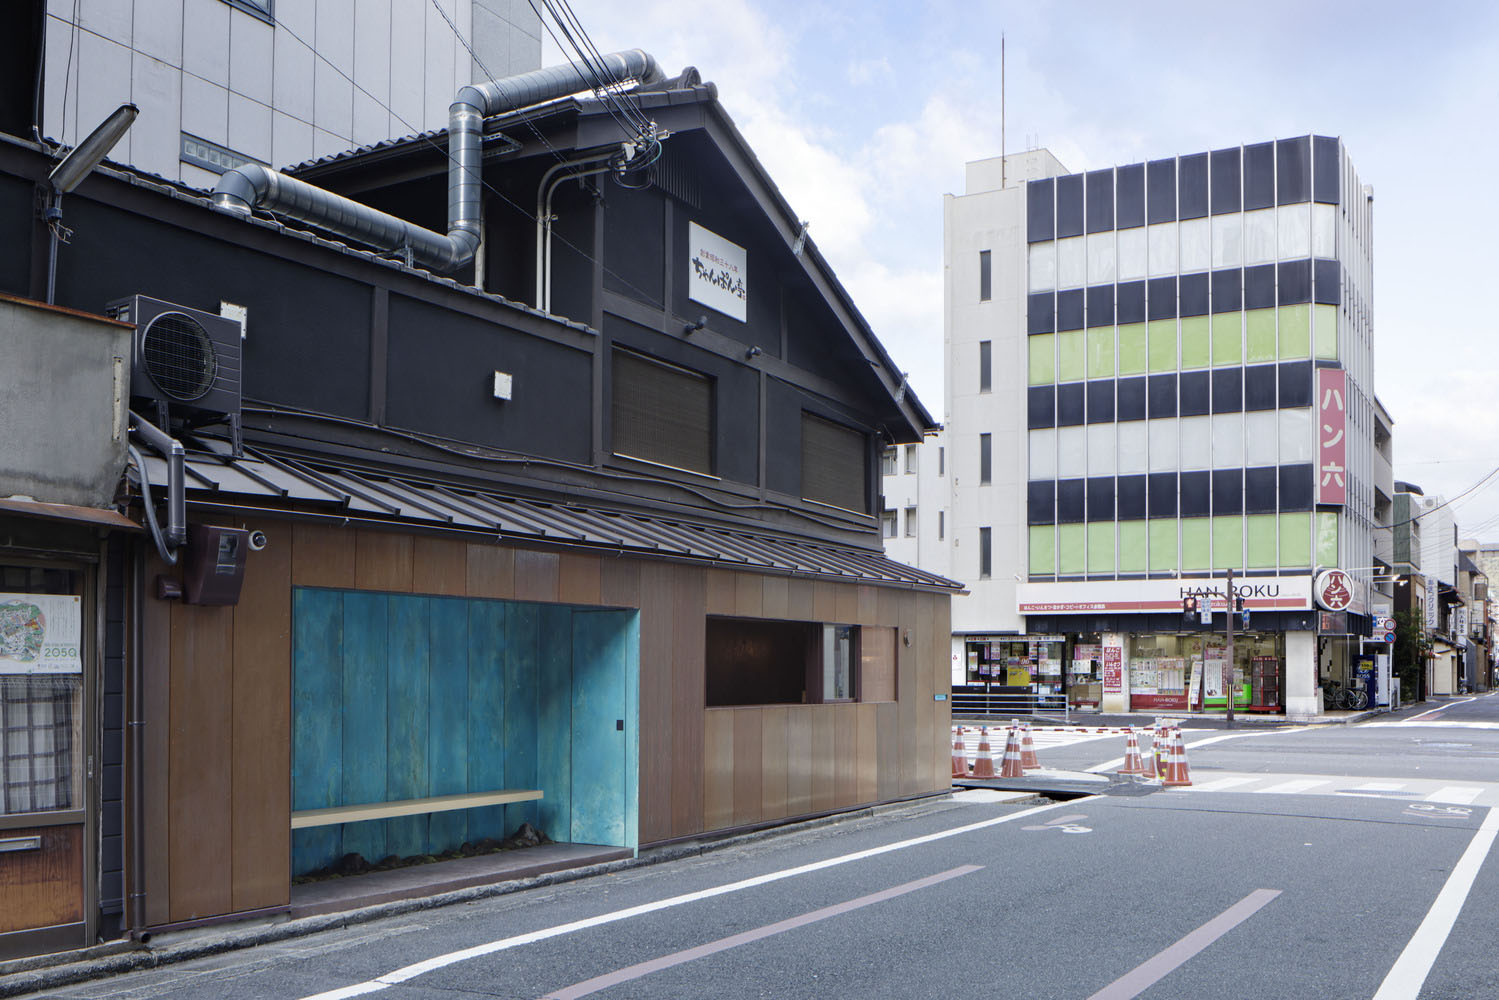 日本,京都,咖啡厅设计案例,极简主义,街边店,10㎡,咖啡厅设计,G architects studio,咖啡店设计